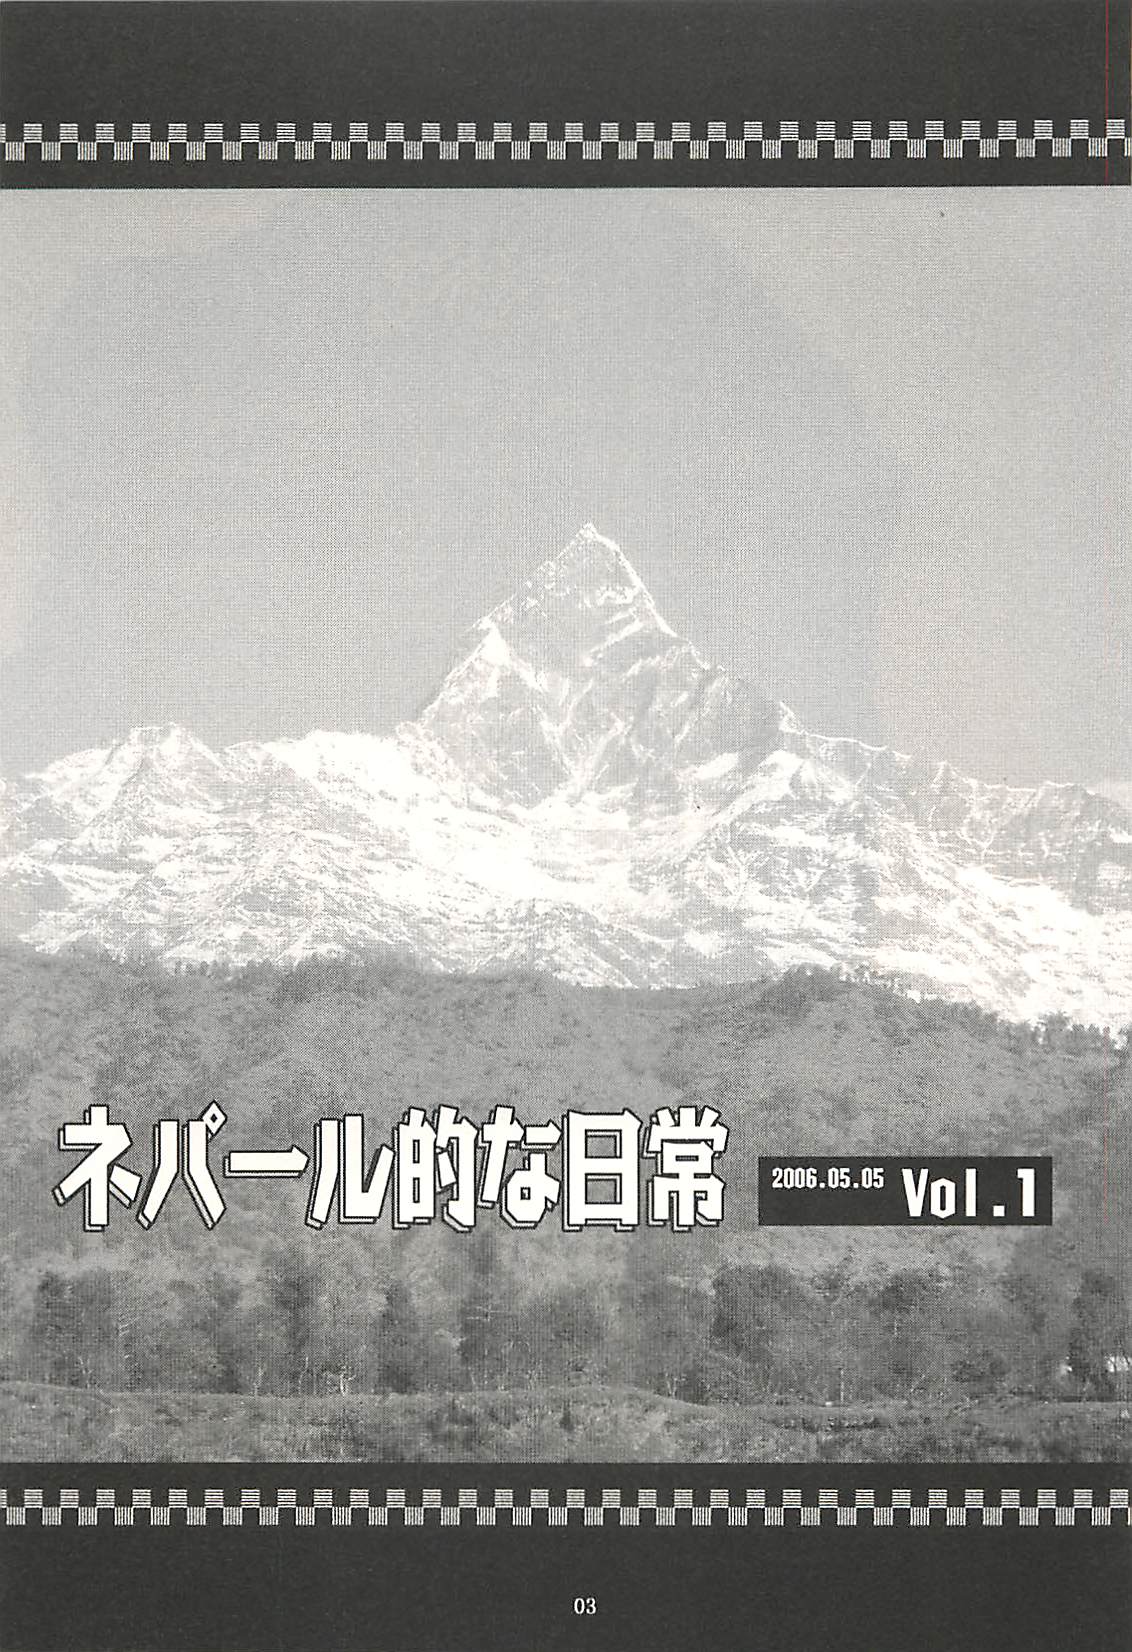 [NOUZUI MAJUTSU, NO-NO'S (Kawara Keisuke, Kanesada Keishi)] Nepal tekina nichijou Vol. 1 [脳髄魔術, NO-NO'S (瓦敬助, 兼処敬士)] ネパール的な日常Vol.1